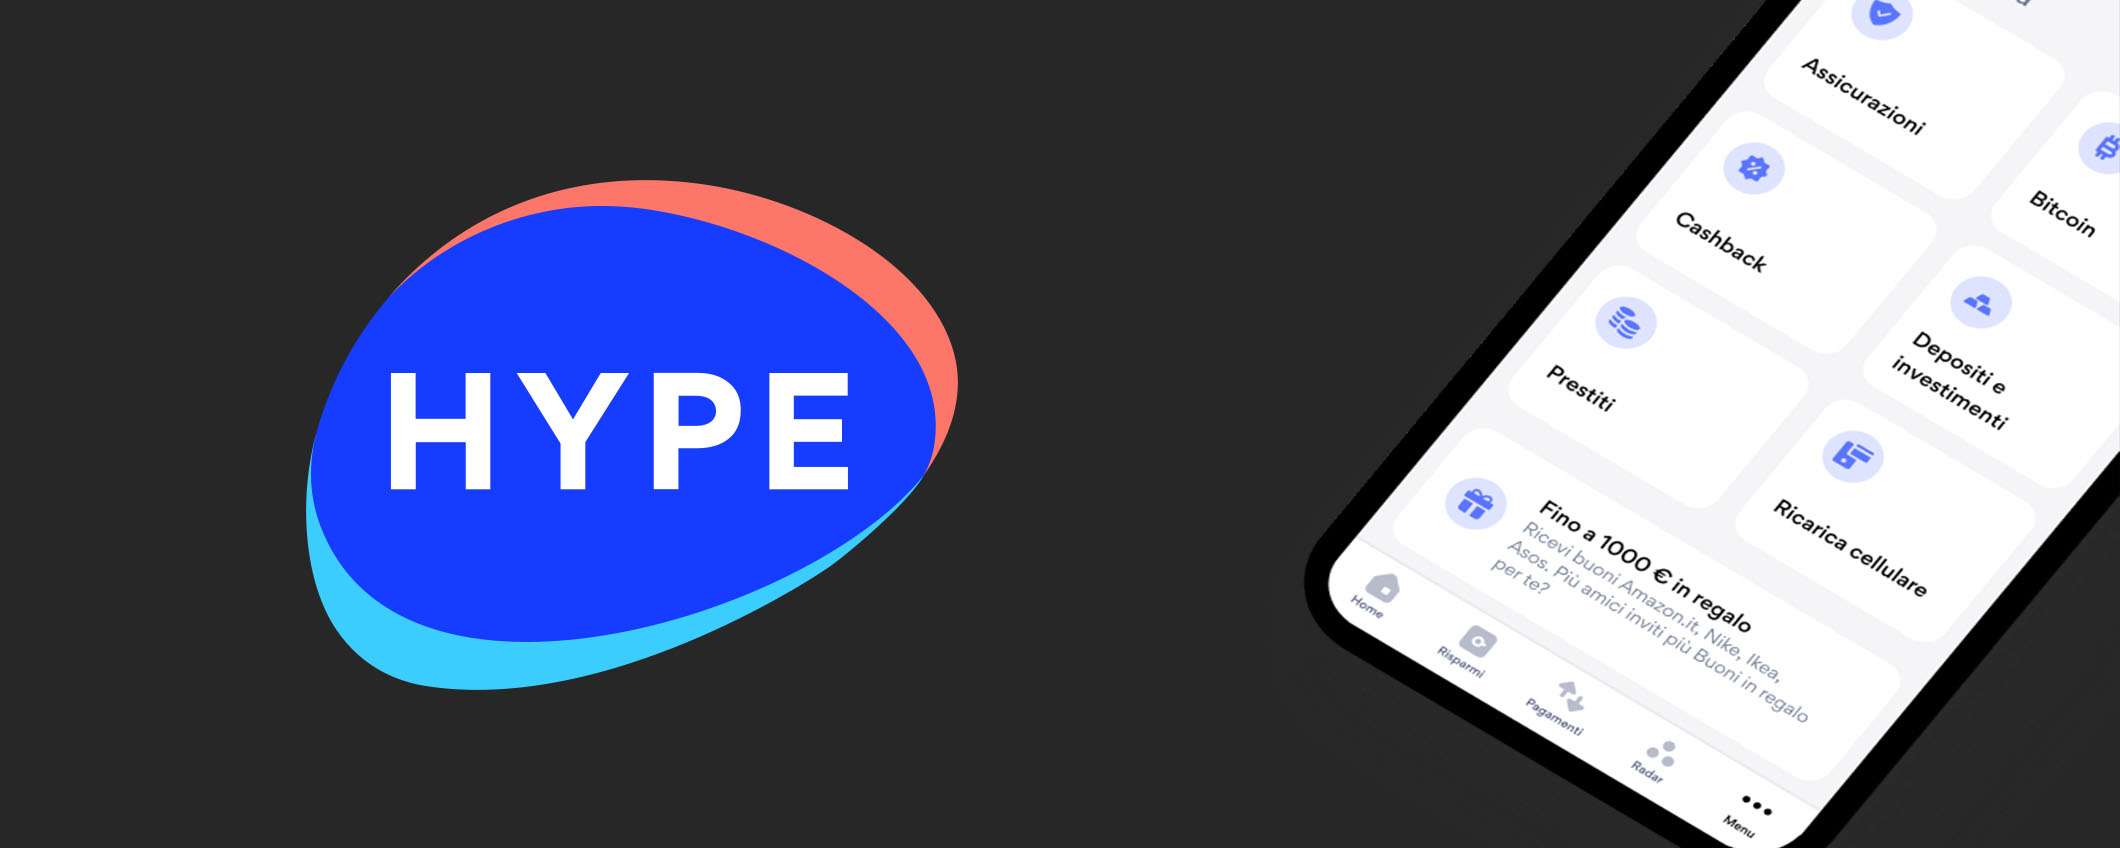 Hype Premium: diventa titolare e ottieni ora un bonus di 25€